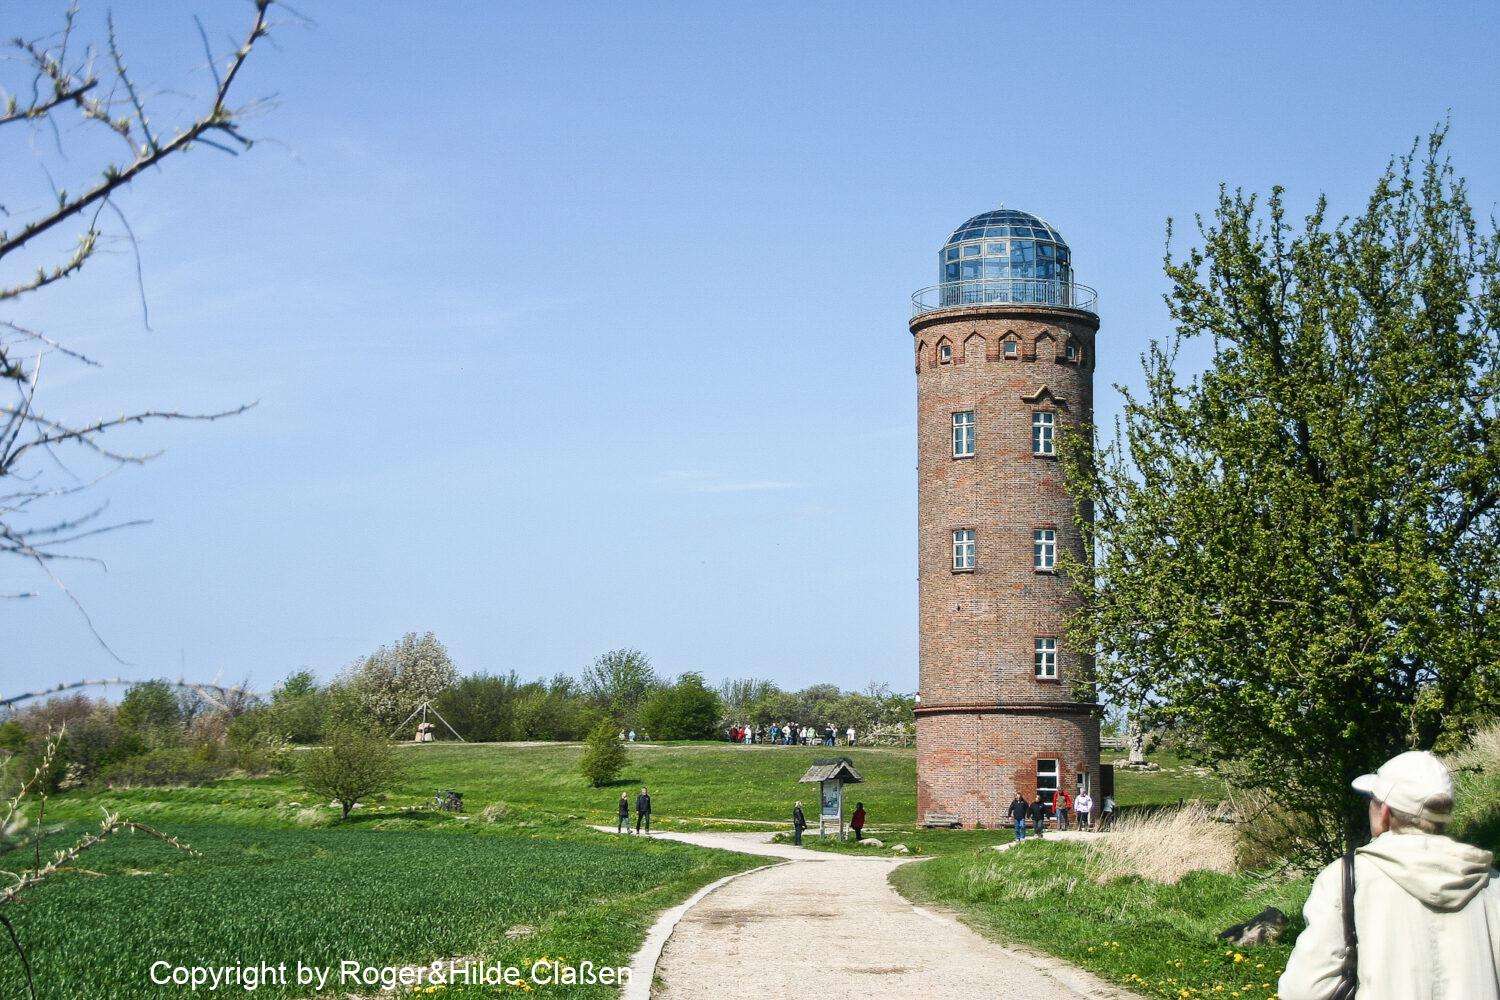 Wie der Name schon sagt. Dieser Turm hatte die Funktion den Funkverkehr an der Ostsee anzupeilen und zu überwachen. Sie wurde von 1935 bis 1945 von der deutschen Kriegsmarine genutzt.